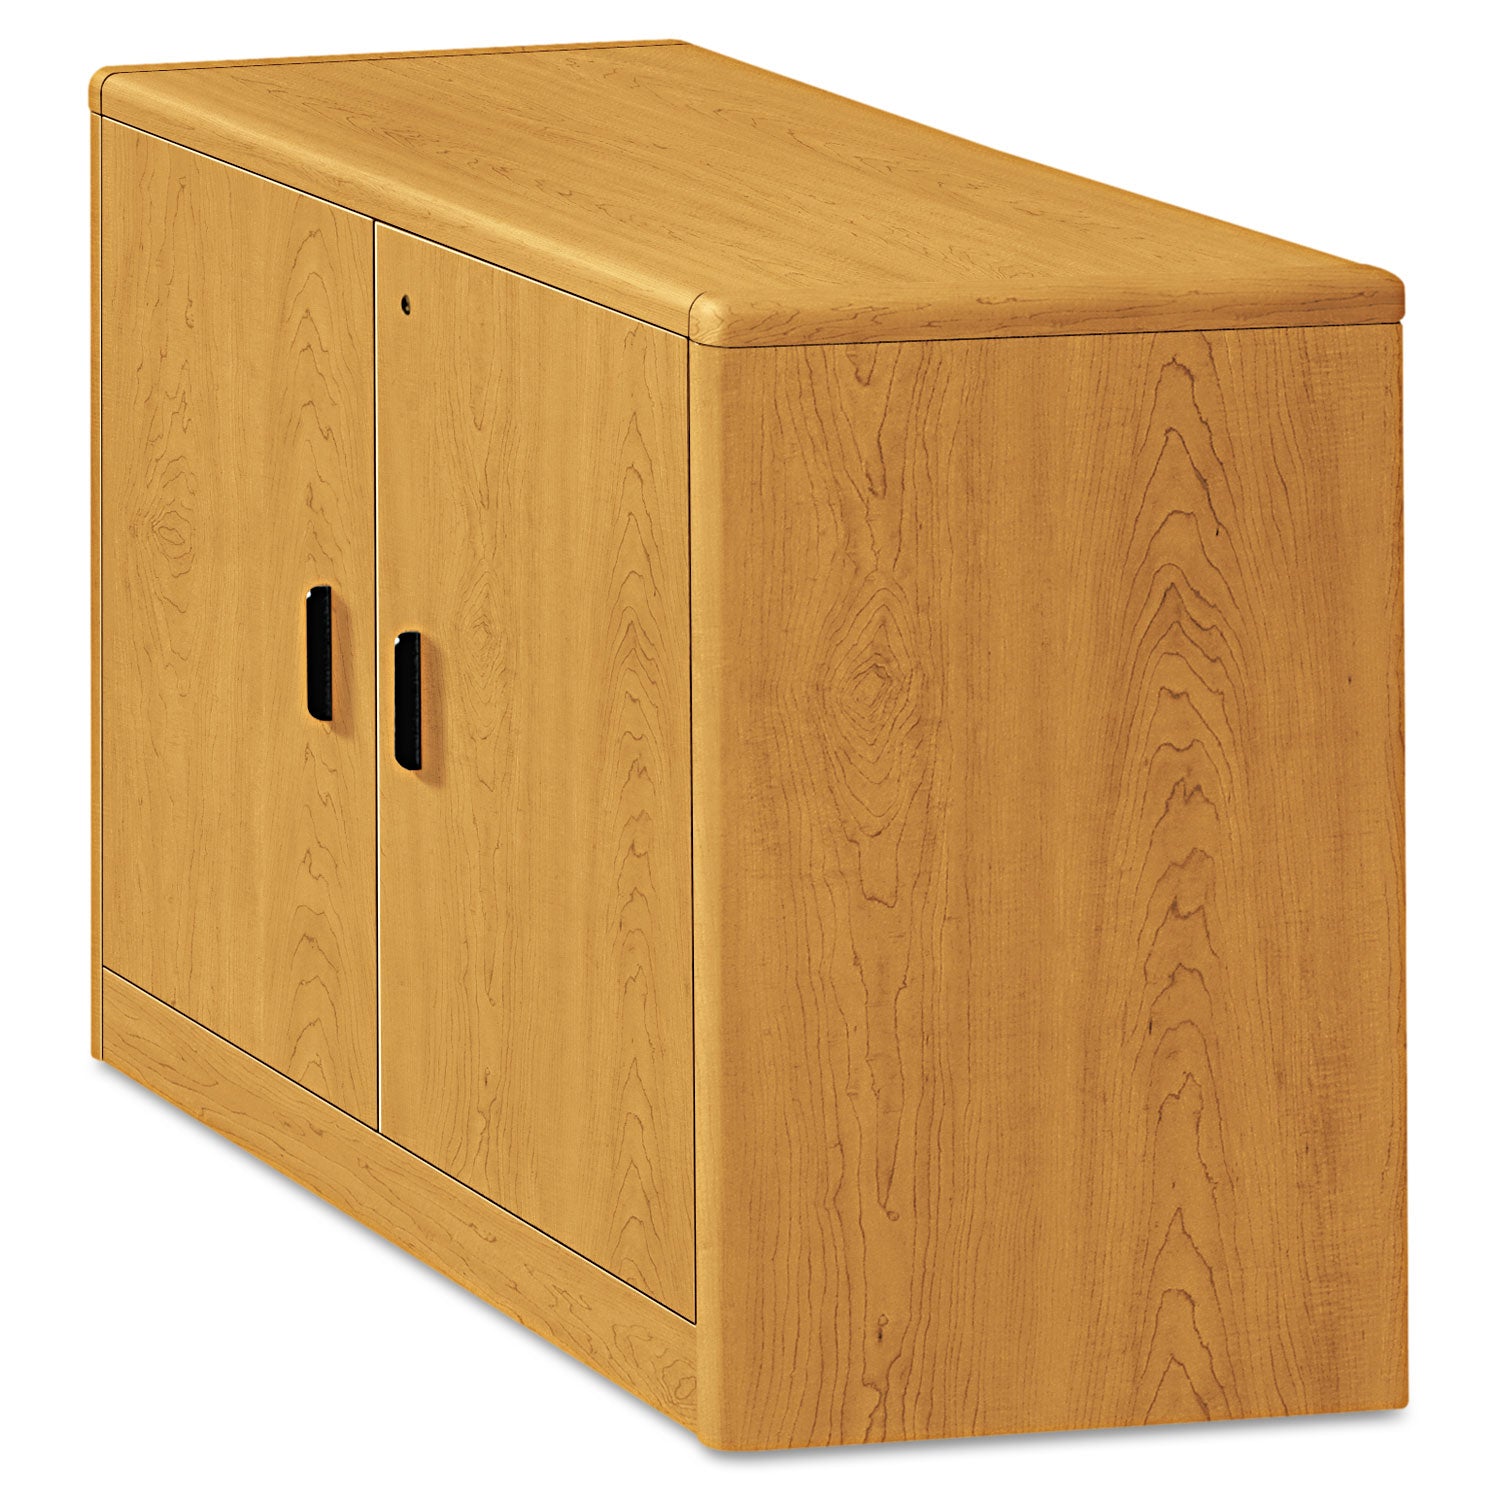 10700 Series Locking Storage Cabinet, 36w x 20d x 29.5h, Harvest - 